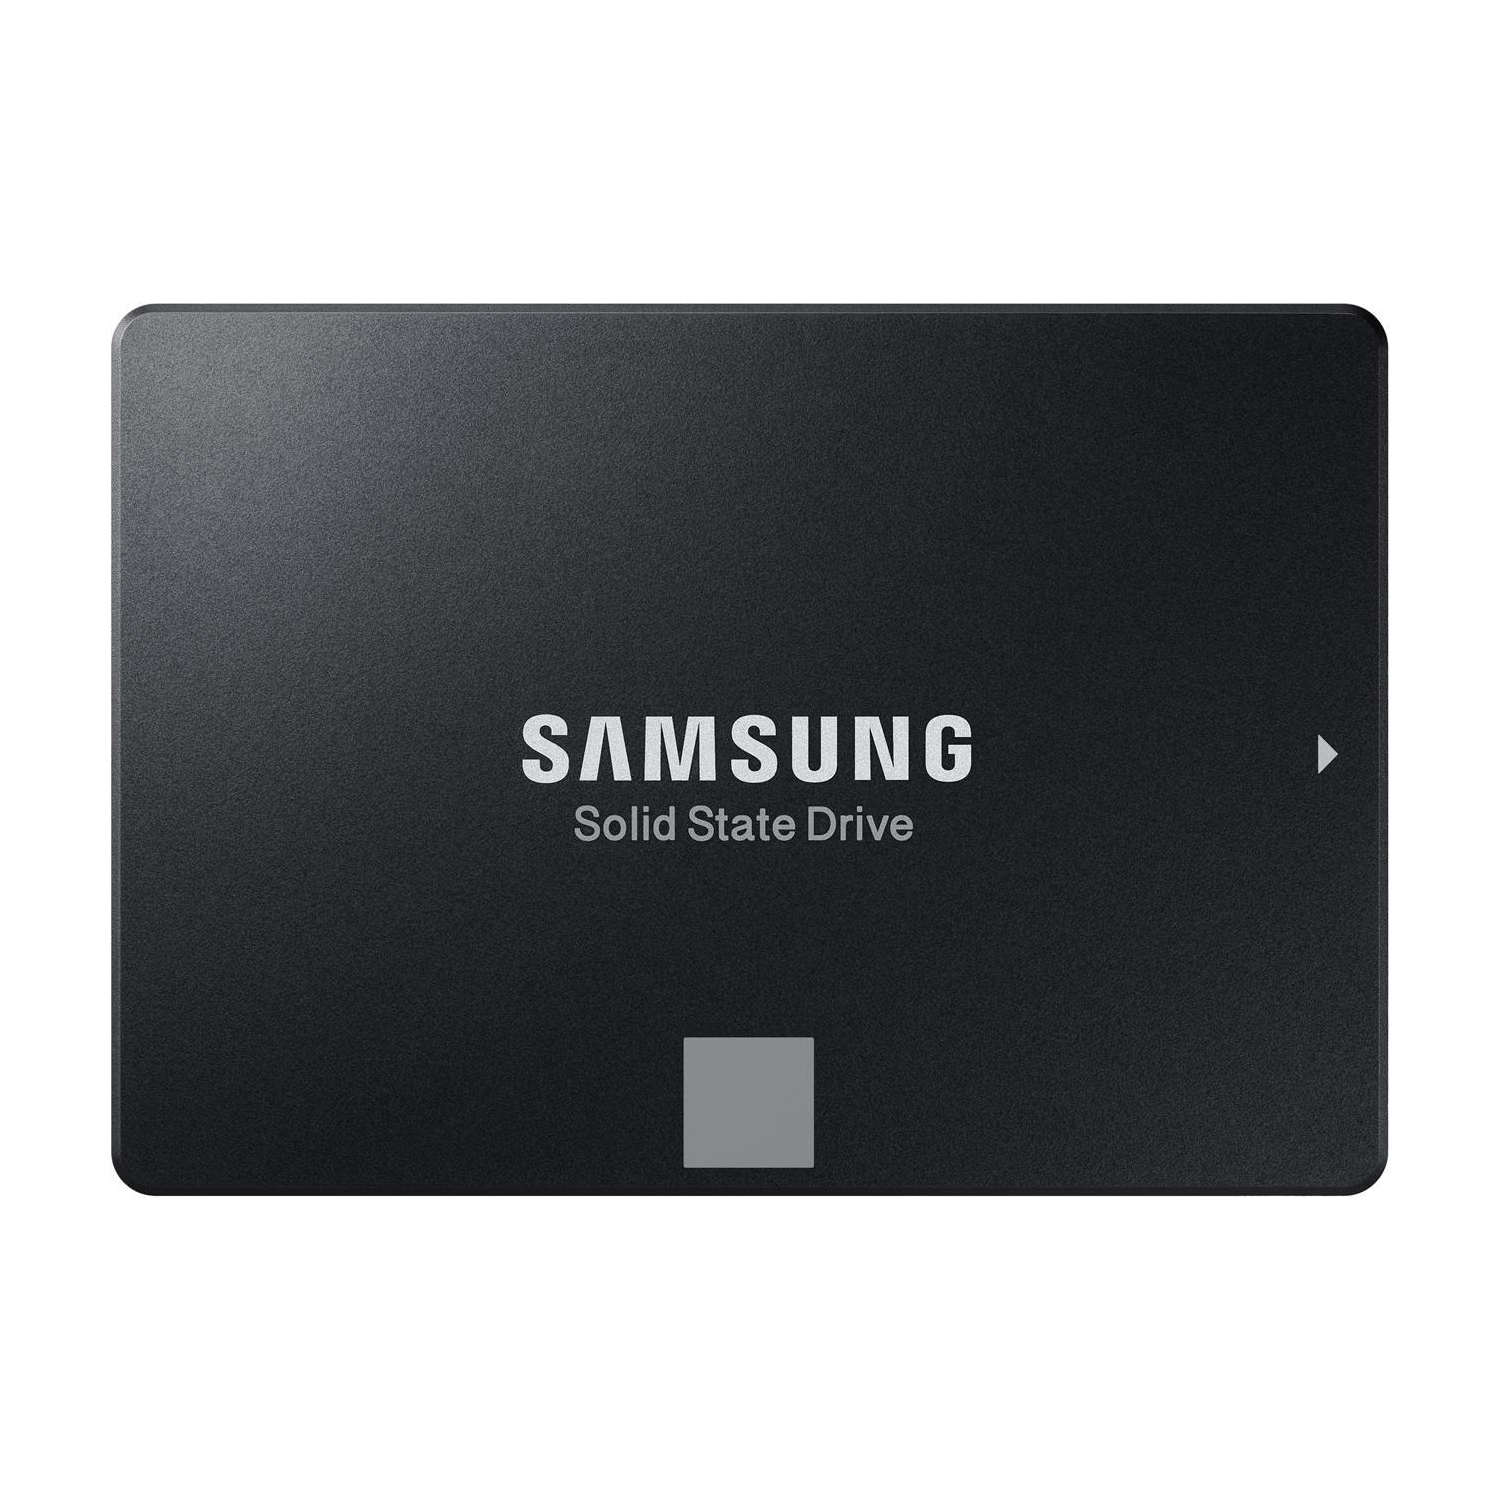 SAMSUNG SSD 1 TB 860 EVO Series 2.5" 1TB SATA III V-NAND 3-bit MLC Internal Solid State Drive (SSD) MZ-76E1T0B/AM